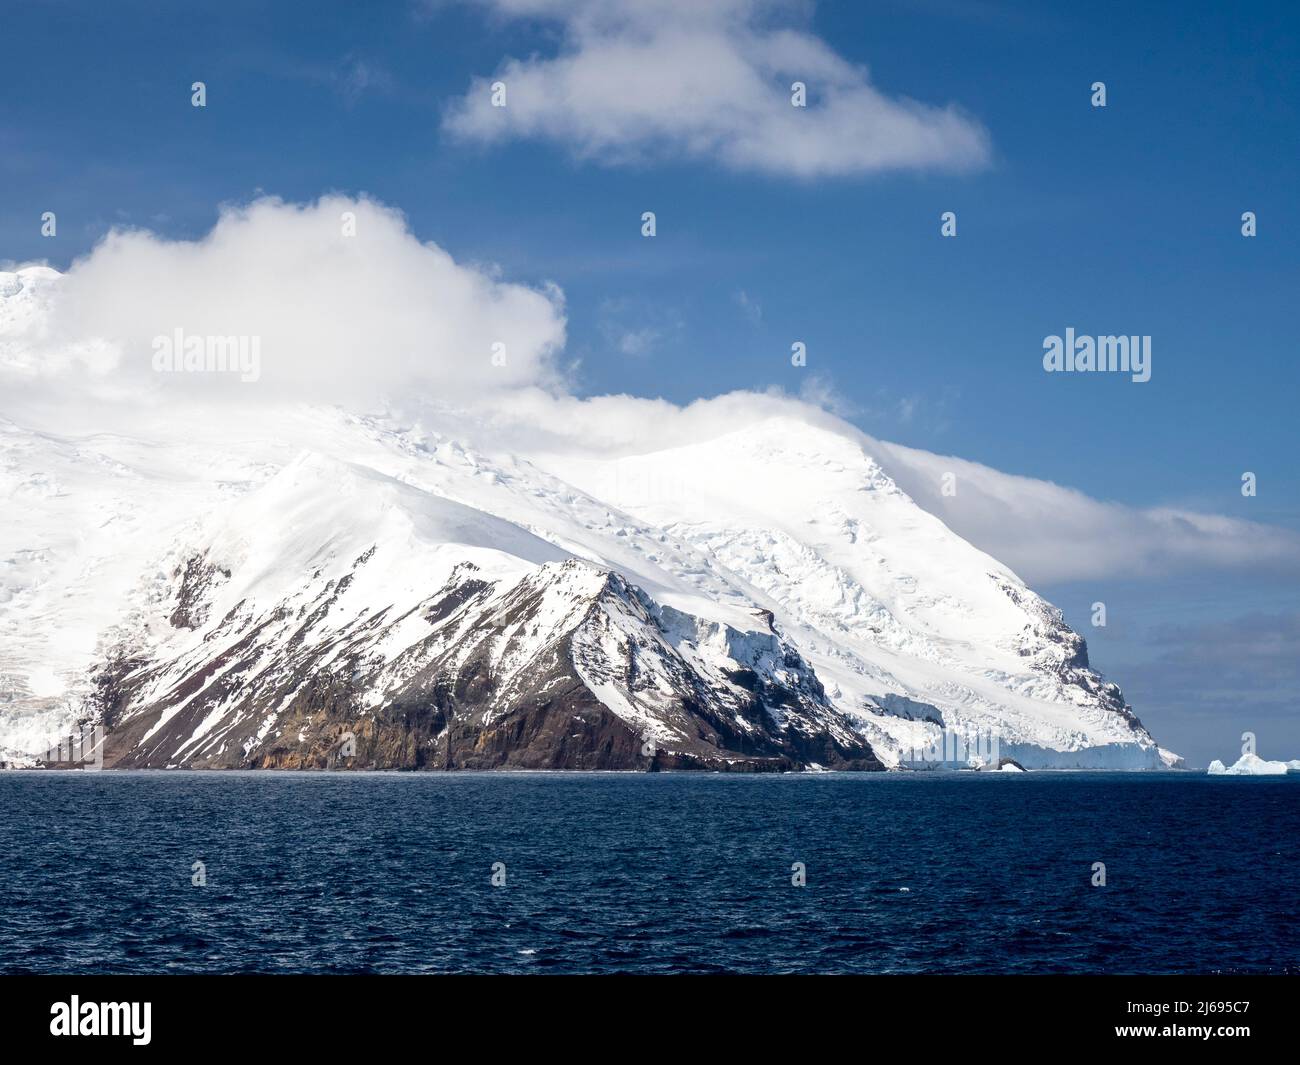 Isla Cook cubierta de hielo, una isla volcánica en las islas Sandwich del Sur, Atlántico Sur, regiones polares Foto de stock